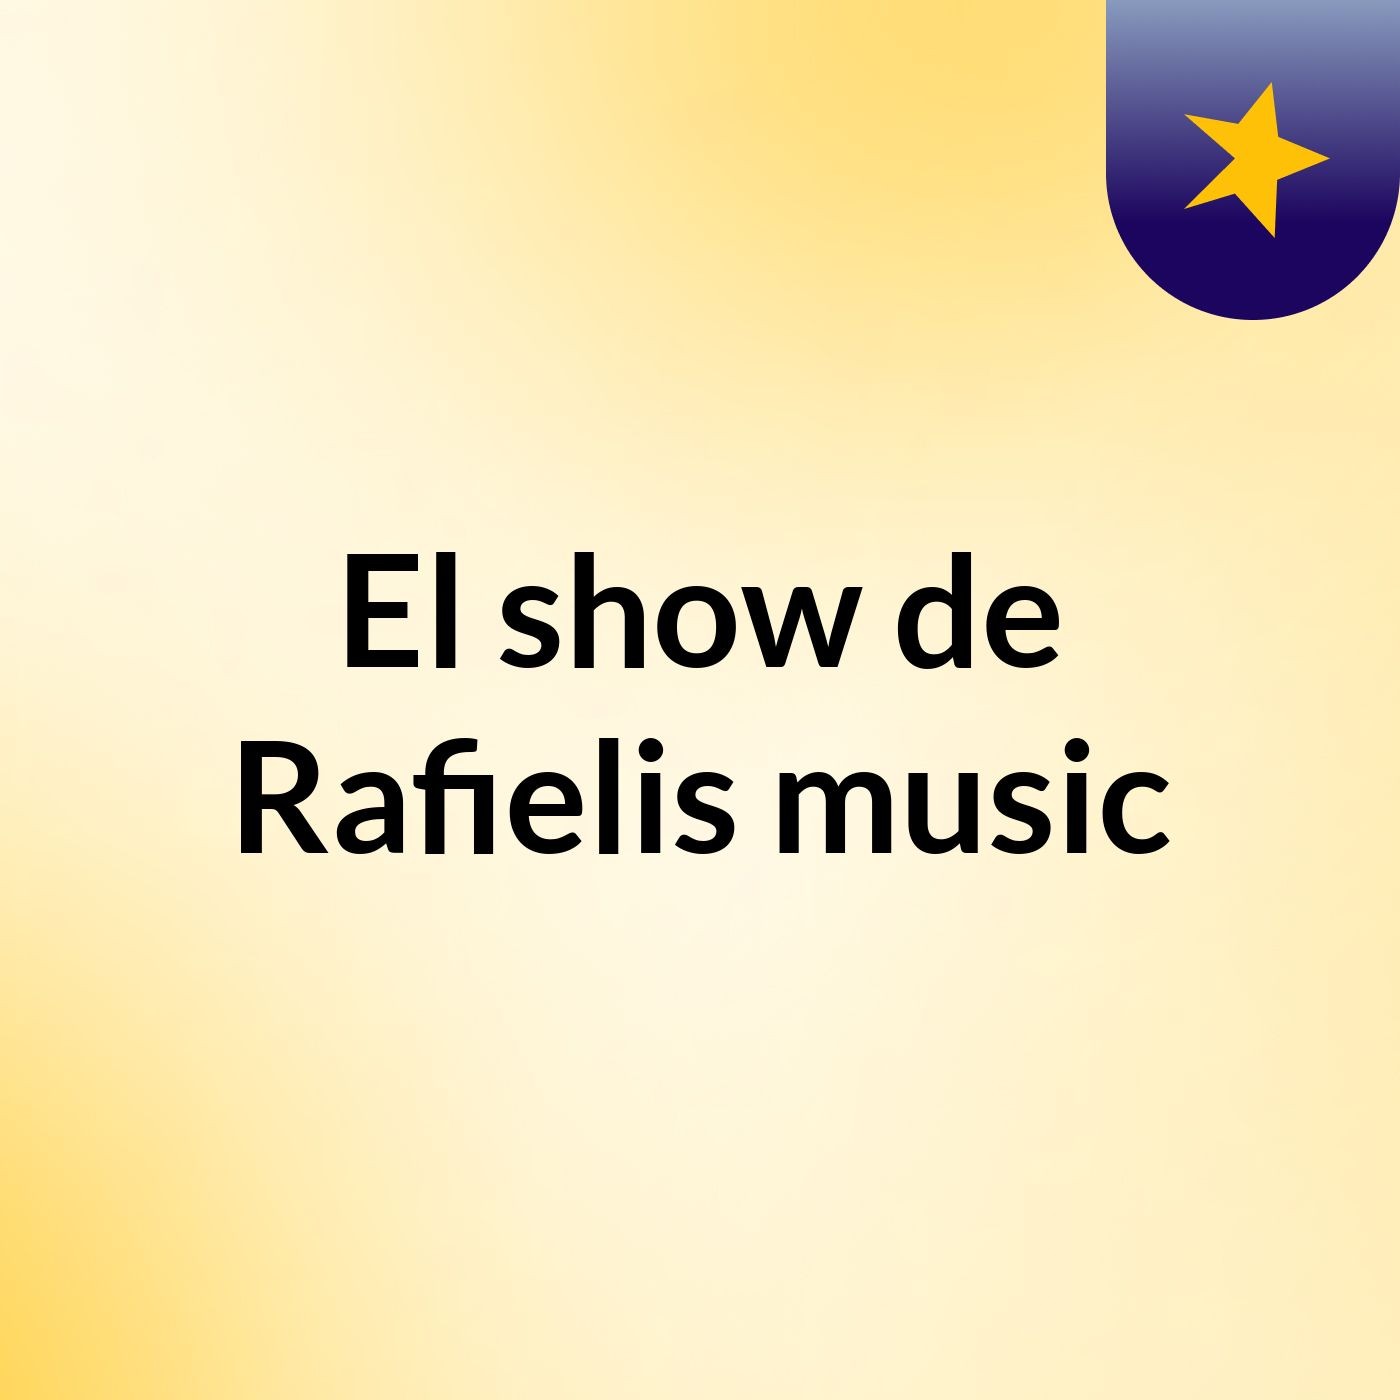 El show de Rafielis music